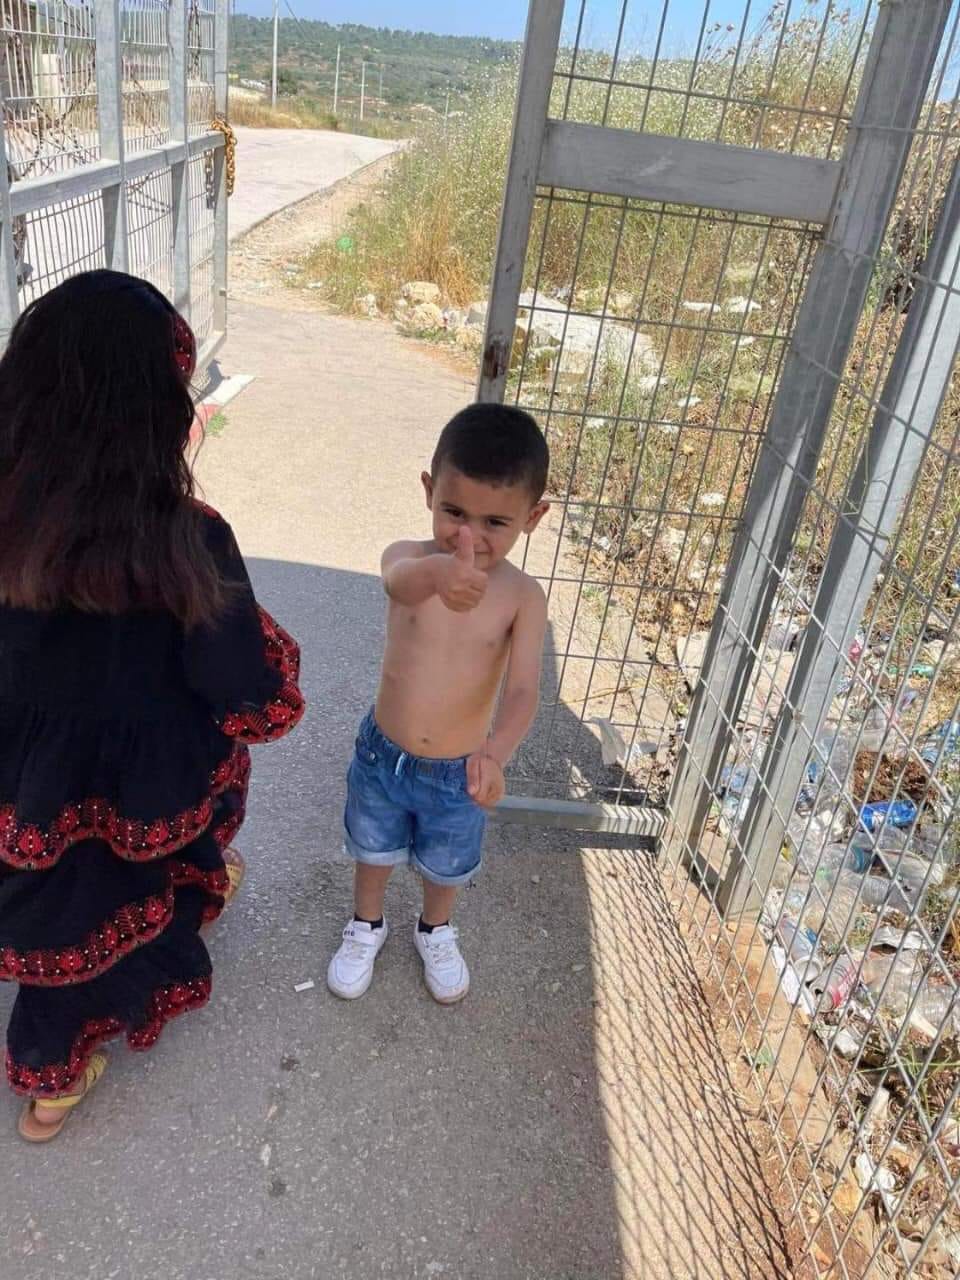 الطفل يوسف رافعًا شارة النصر، بعد أن أجبره جنود الاحتلال على خلع قميص عليه صورة بندقية